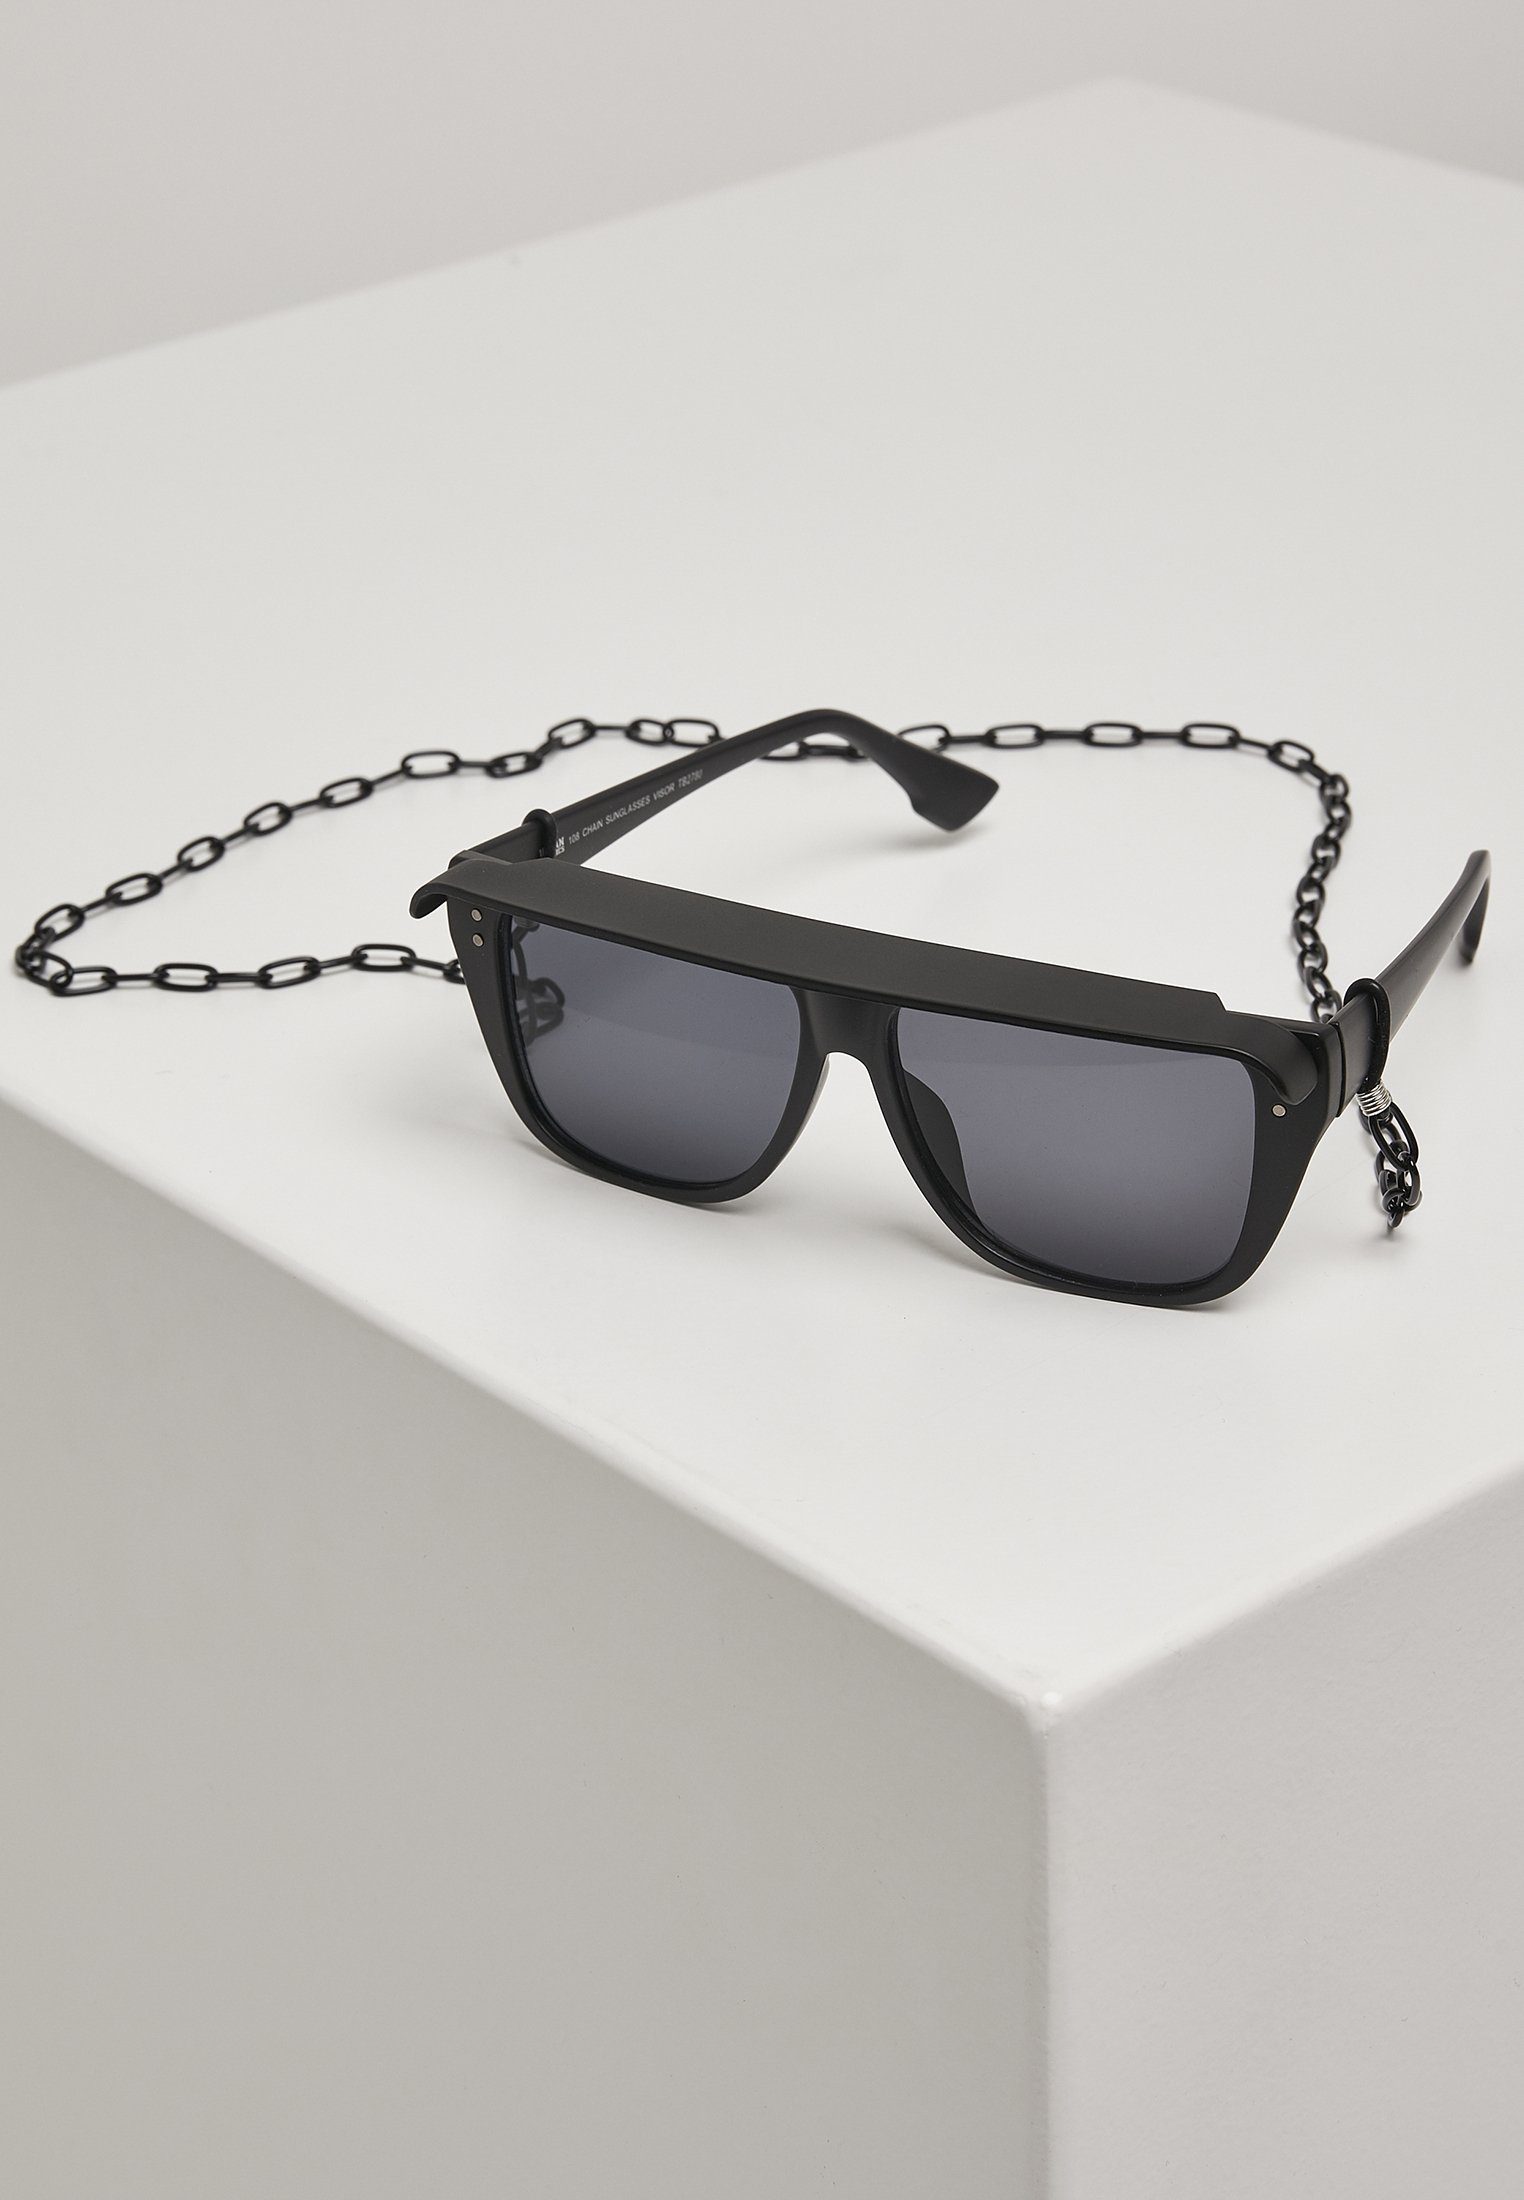 URBAN CLASSICS Sonnenbrille Accessoires 108 Chain Sunglasses Visor | Sonnenbrillen